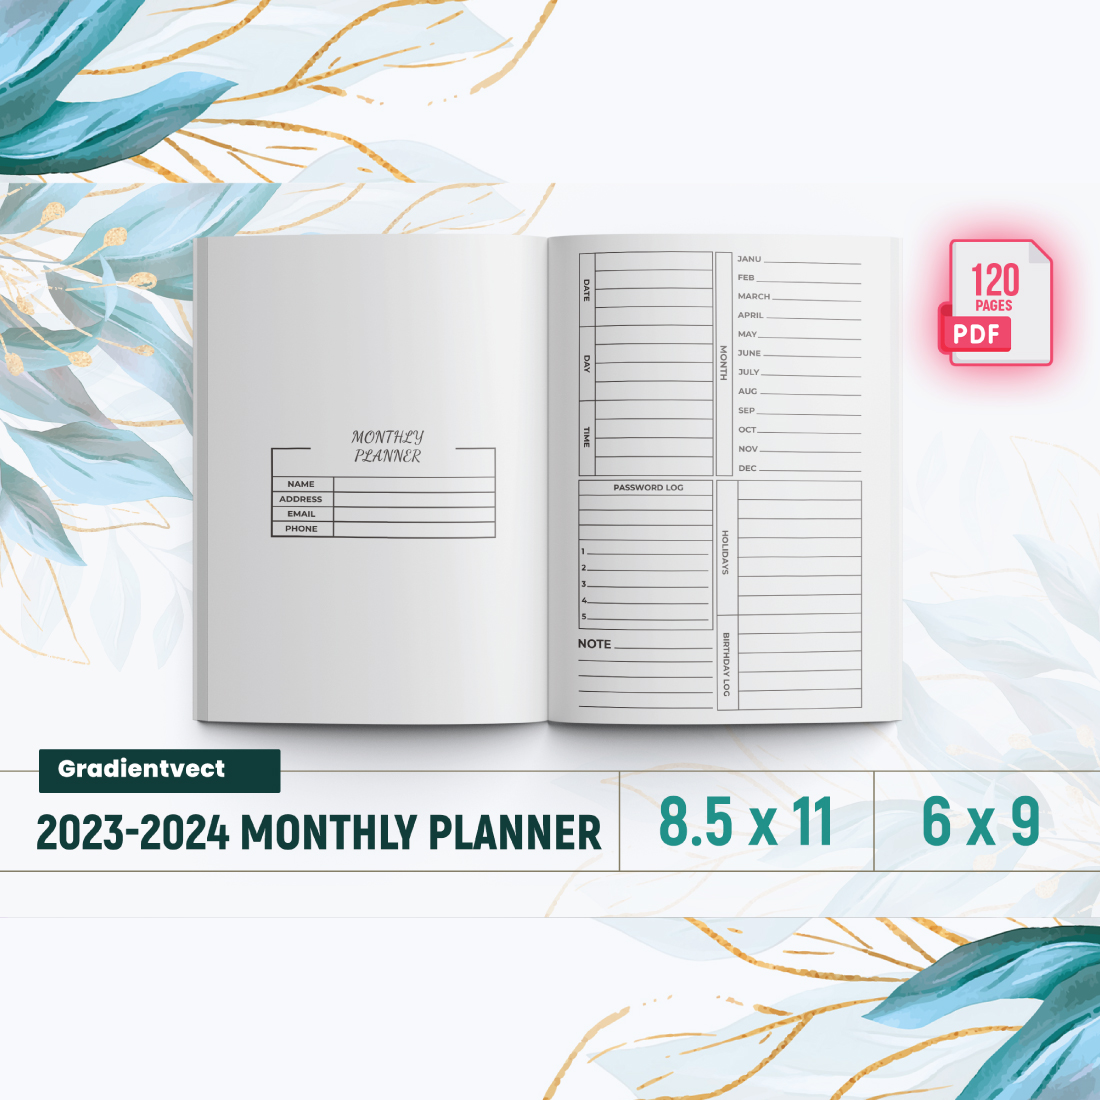 2023-2024 Monthly Planner KDP Interior Design.